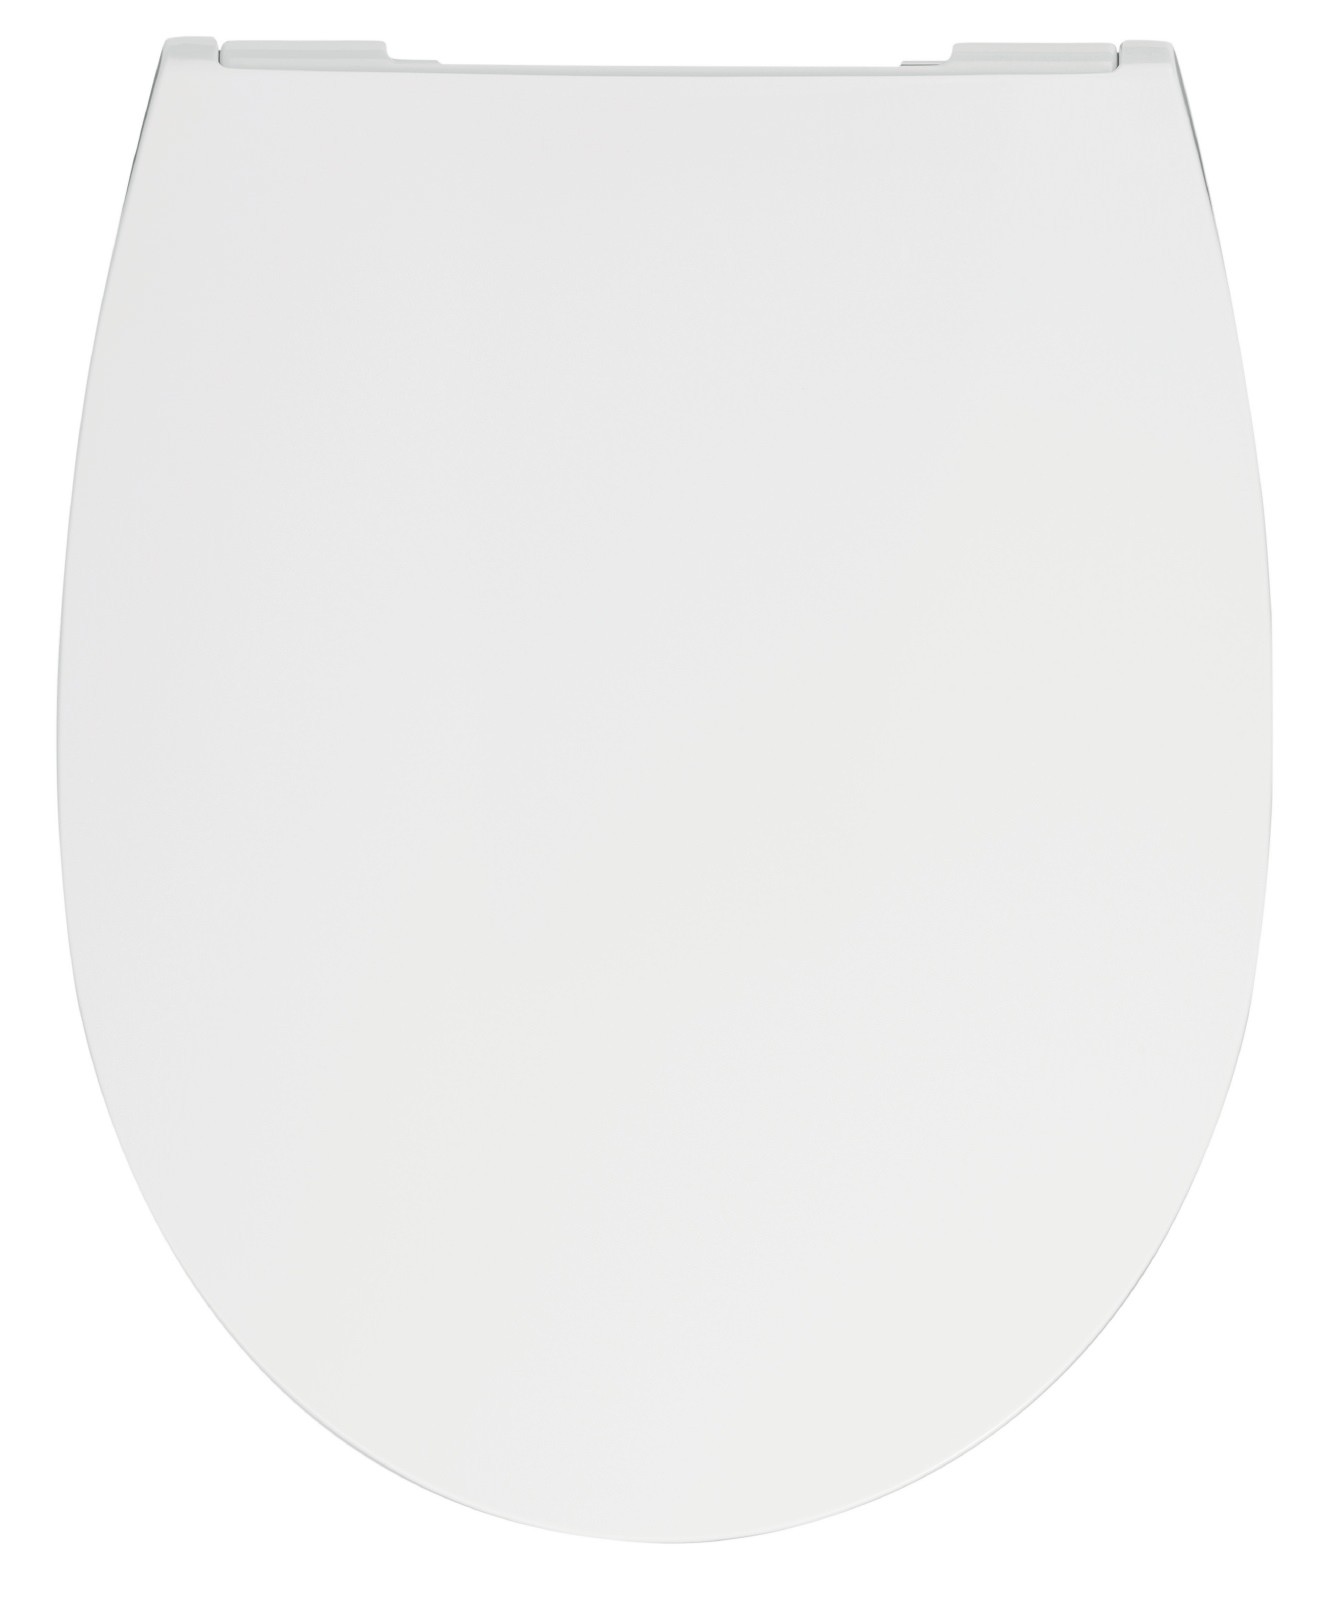 WC-Sitz mit Absenkautomatik 26LP3162 in Weiß, flach und abnehmbar aus Duroplast, Edelstahlscharnier